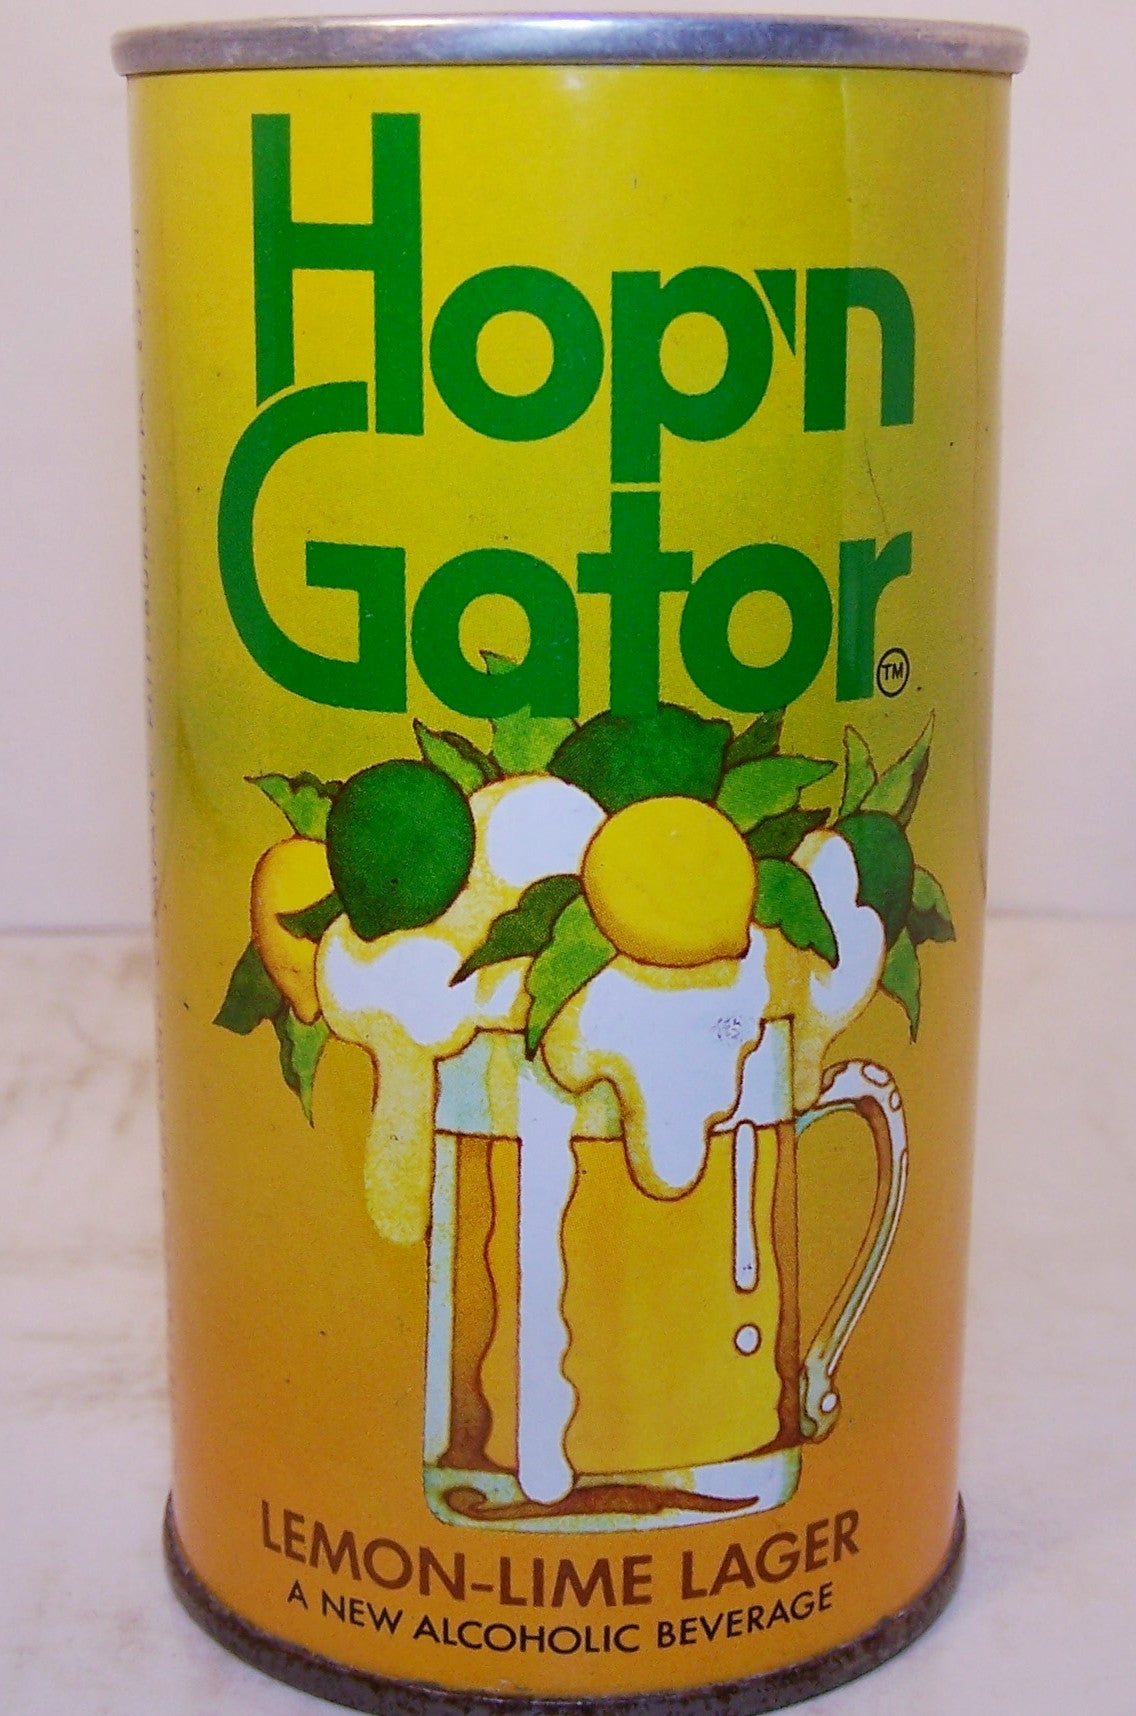 Hop'n Gator Lemon-Lime Lager, USBC II 77-13, grade 1/1+ Sold on 09/15/16